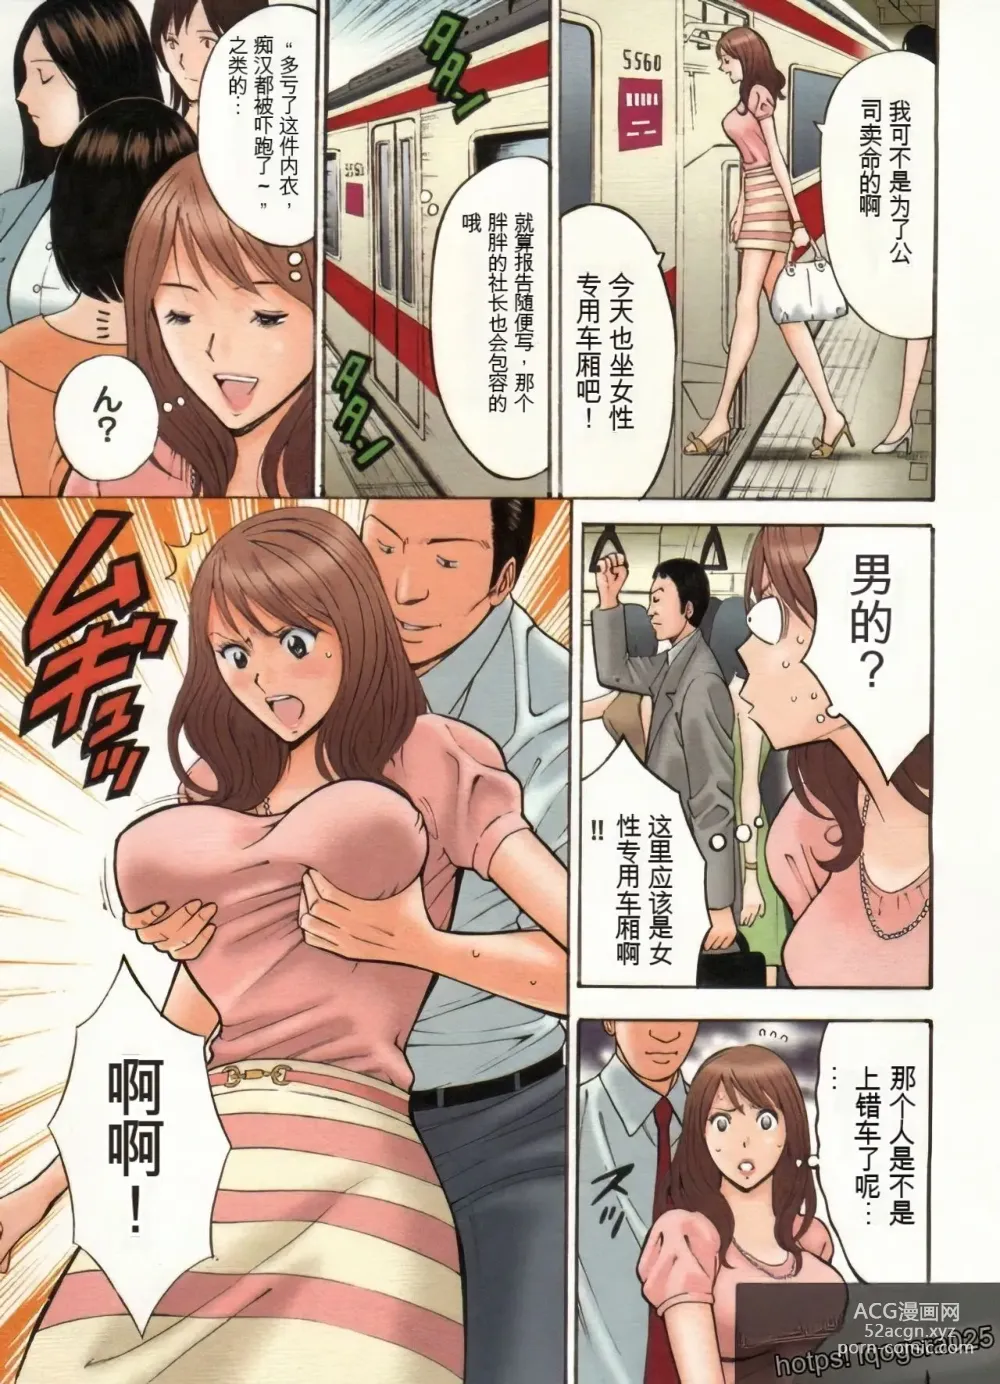 Page 18 of manga Chounyuu Bakunyuu Kabushikigaisha